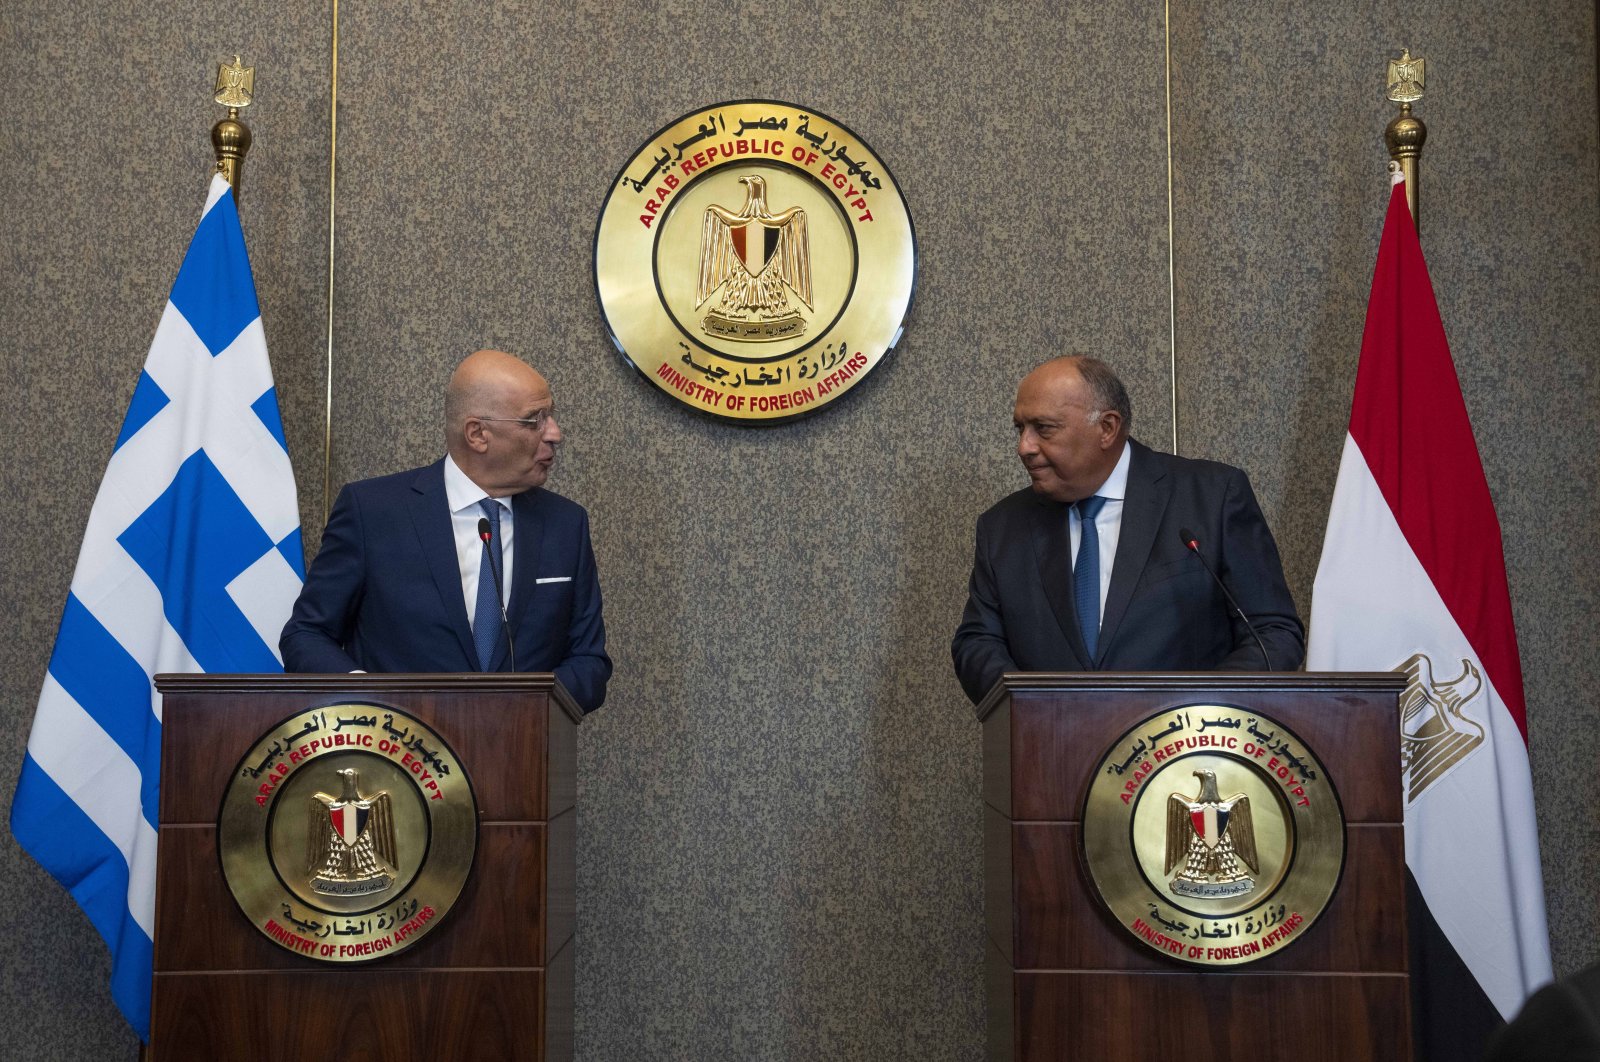 FM Yunani di Mesir untuk pembicaraan setelah kesepakatan energi Türkiye dengan Libya